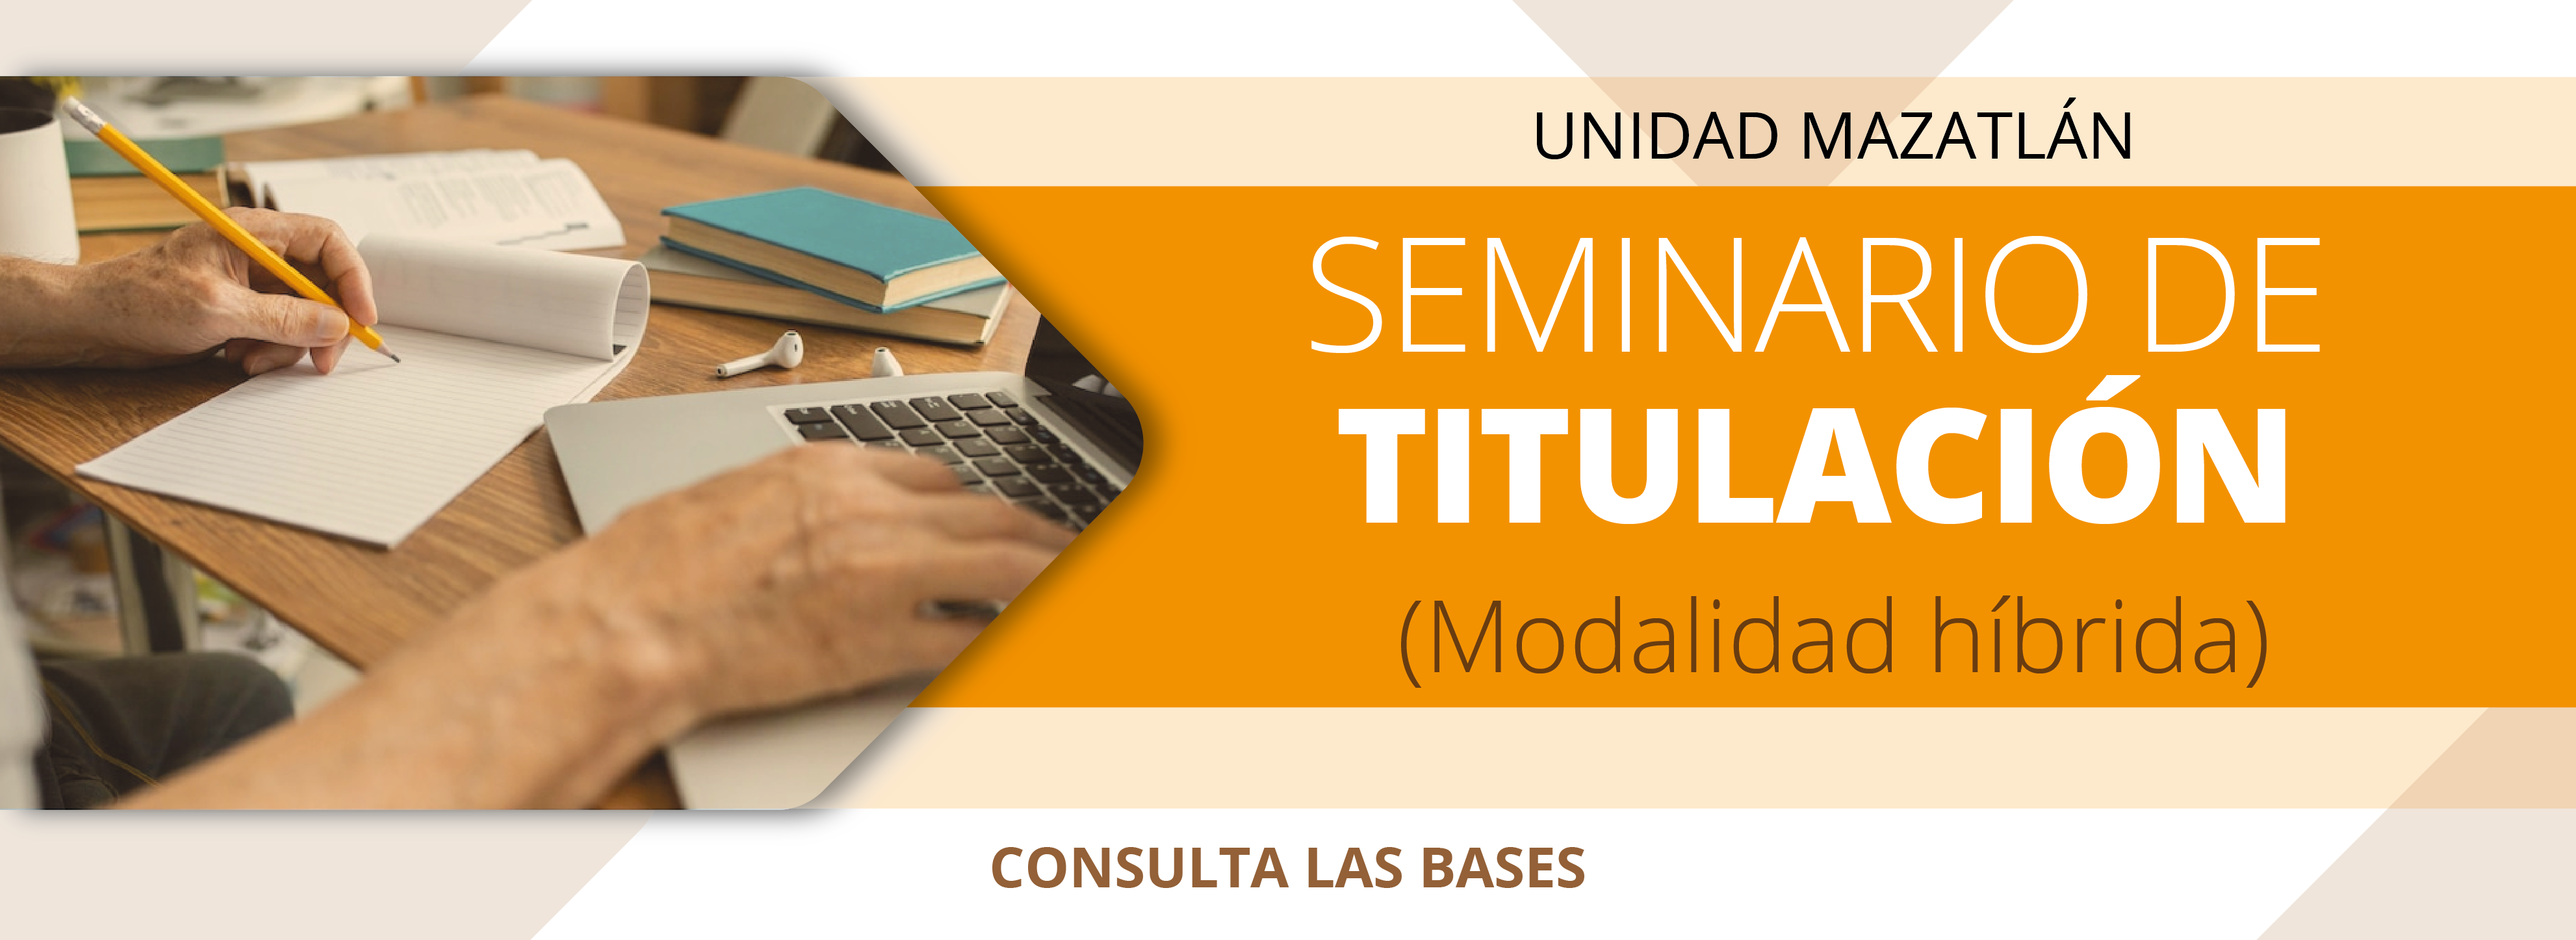 Convocatoria_Seminario_Titulacion_Maestria_MAZATLAN_banner_web